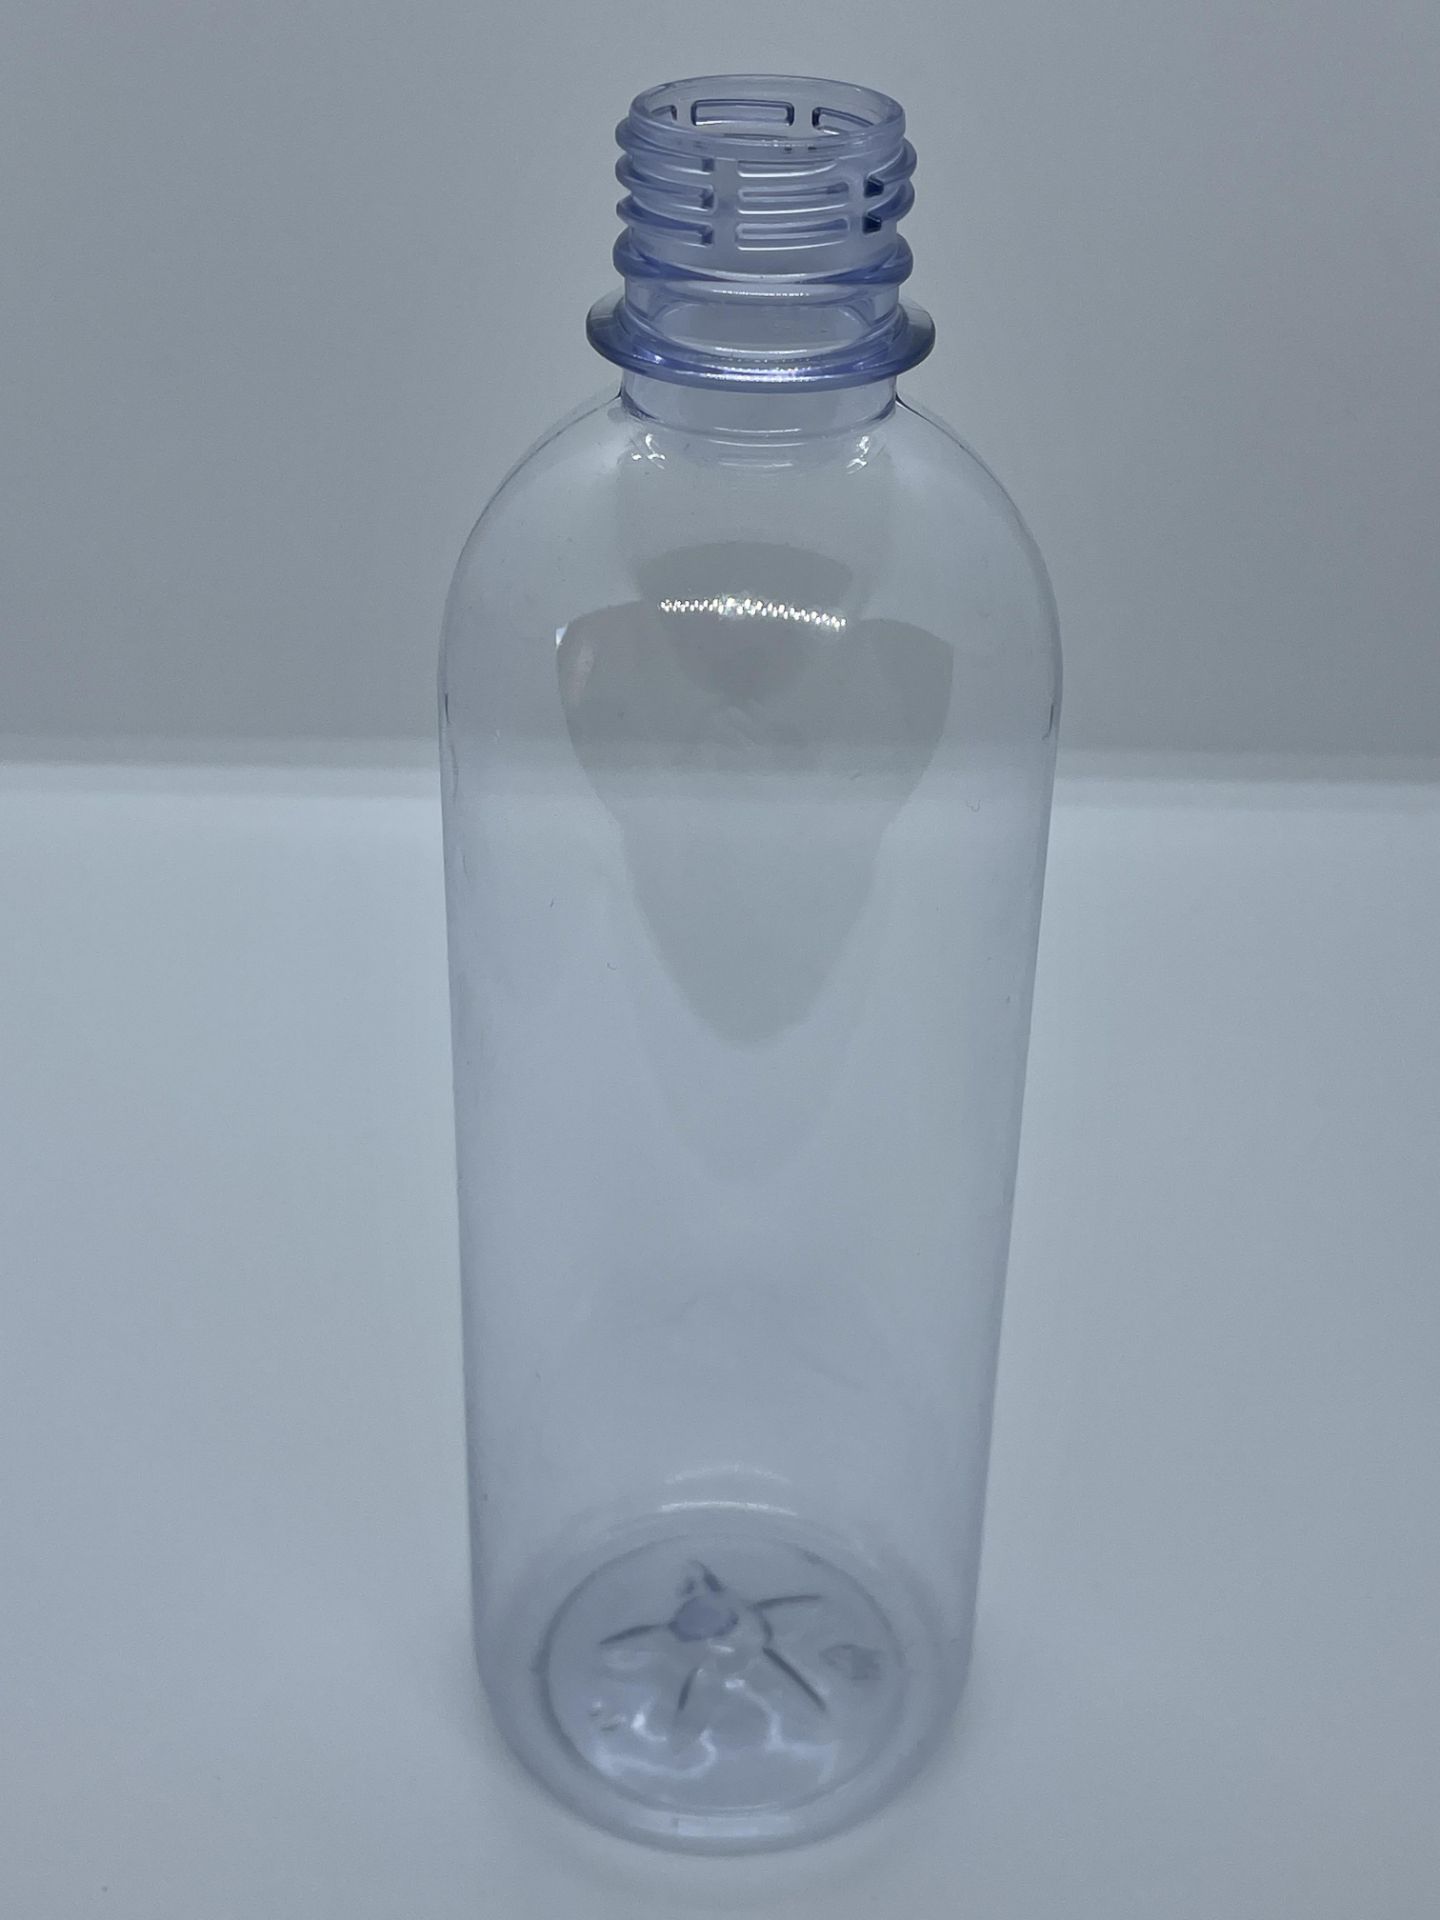 30,000 - 16 oz Empty Bullet Plastic Bottles, Neck Threading 28-410, 8" Tall, 2.5" Diameter - Image 3 of 8